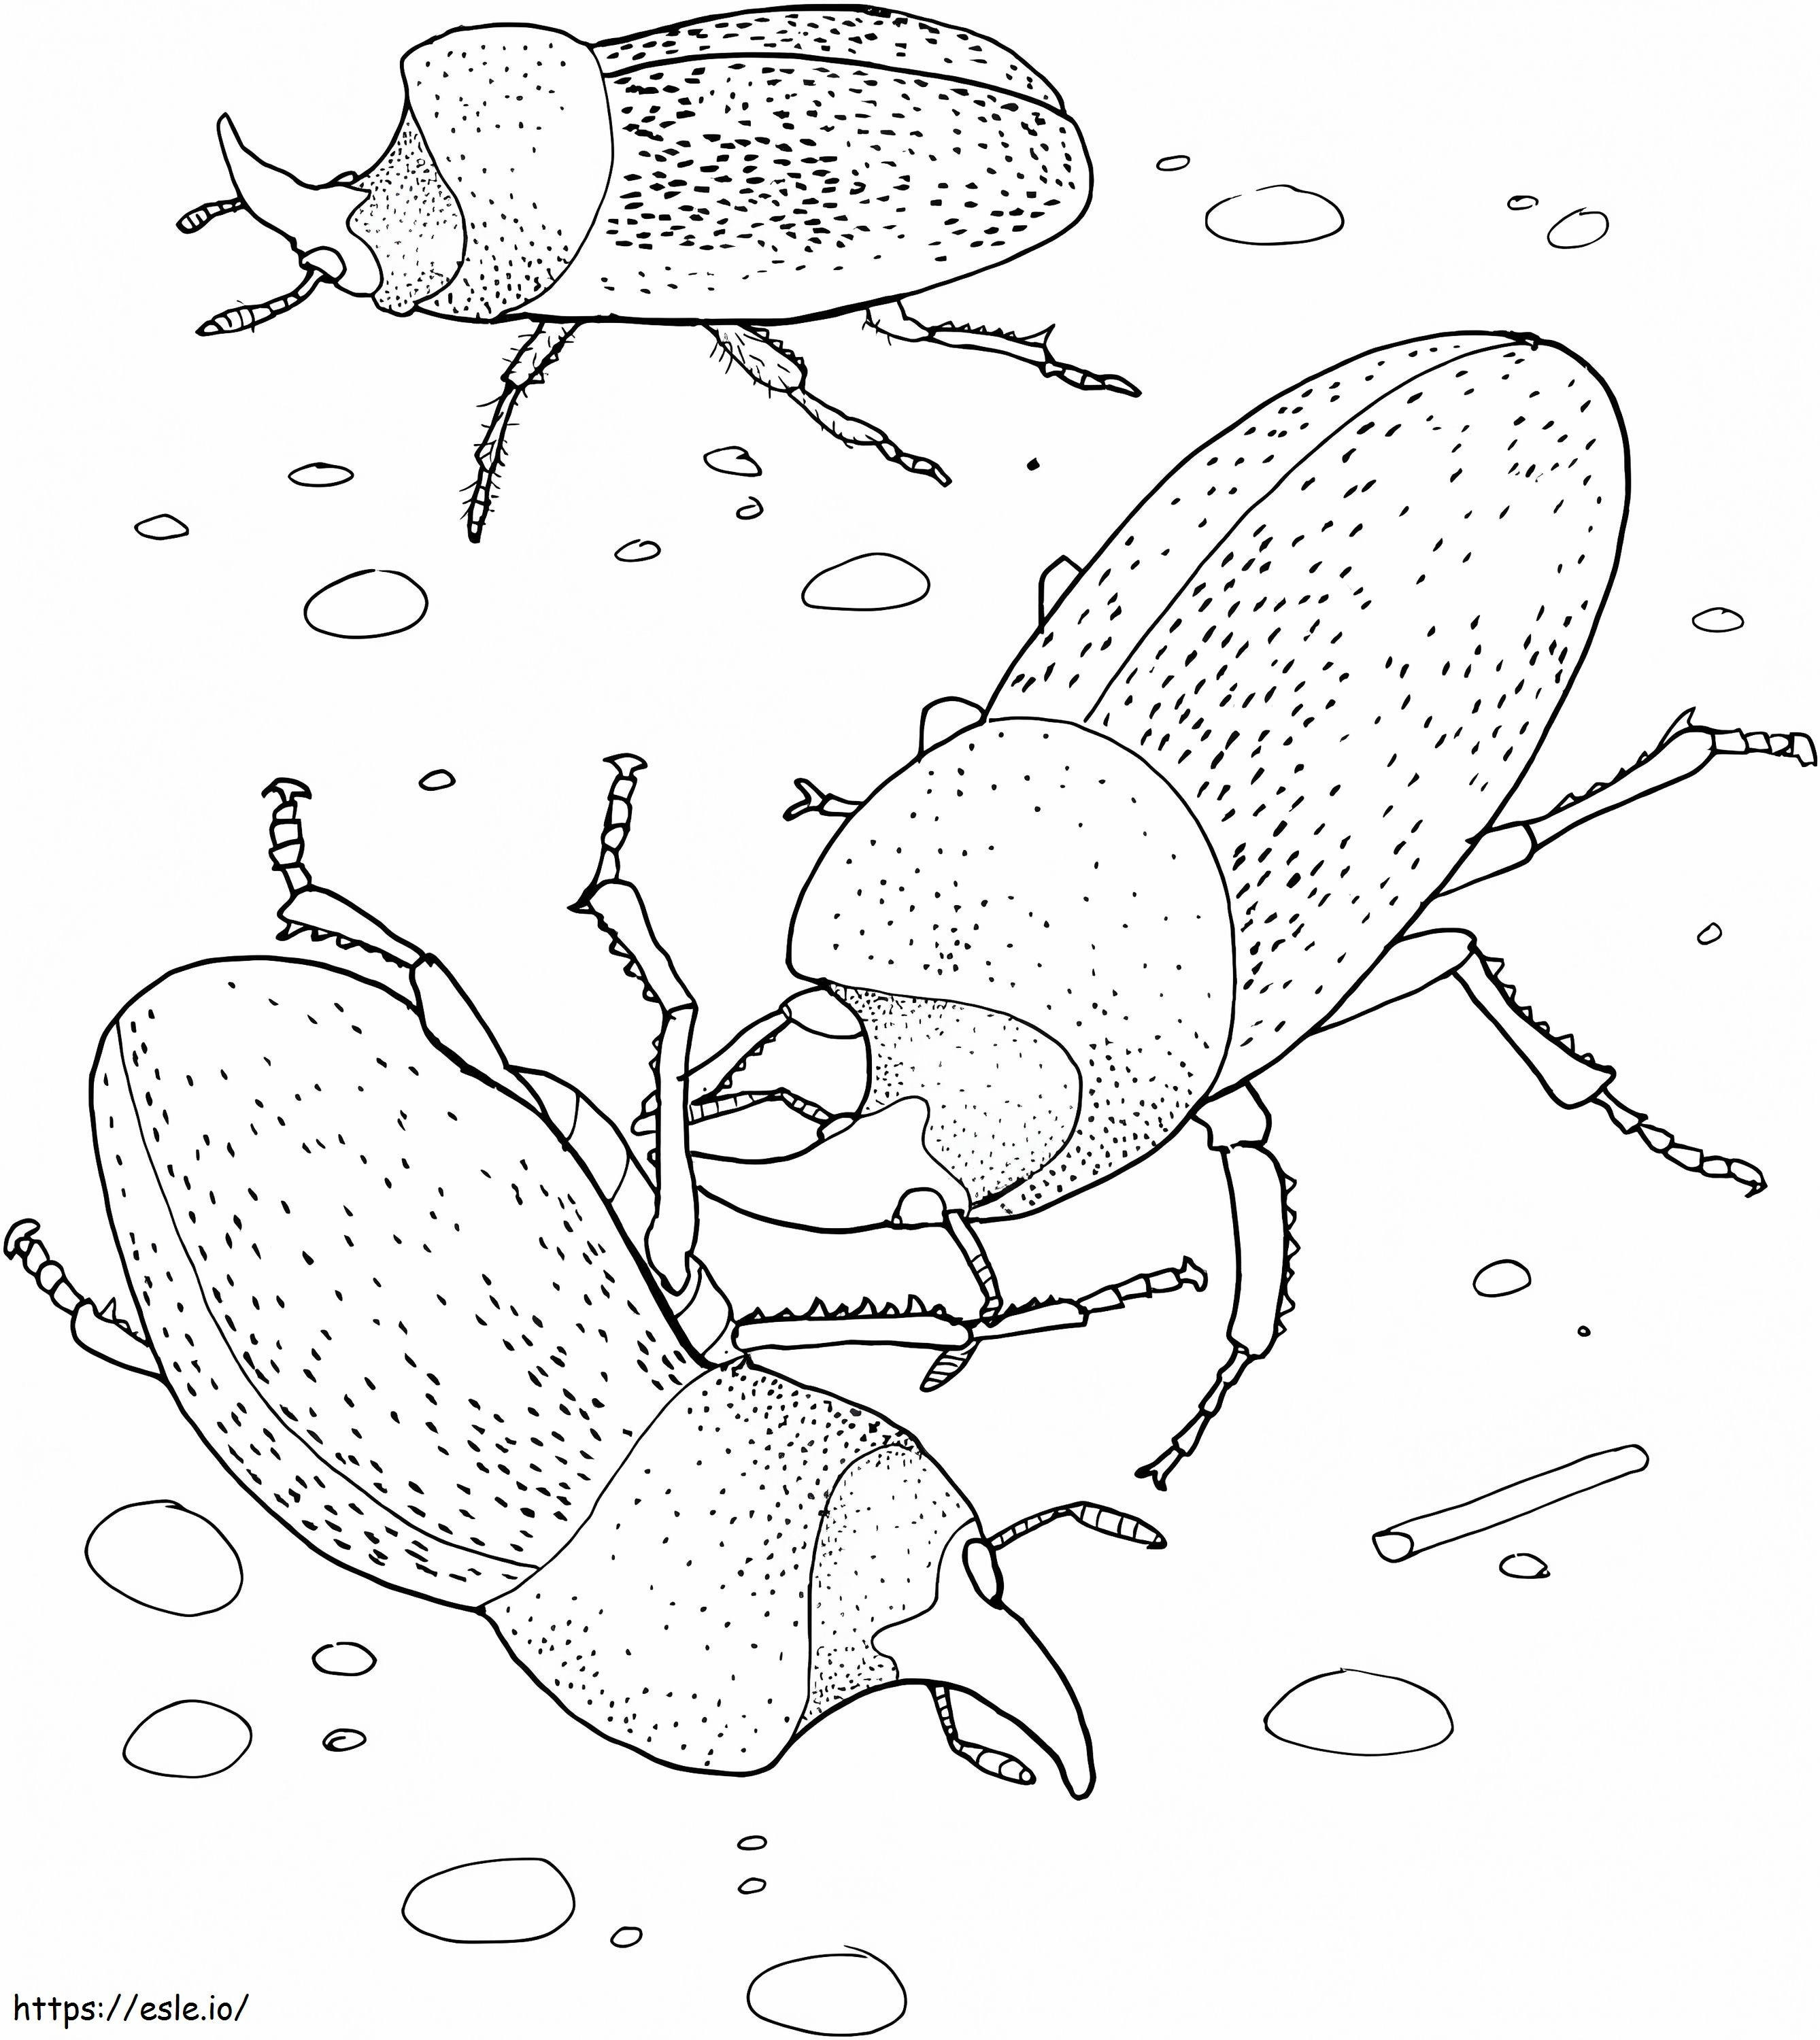 Rhinoceros Beetles coloring page